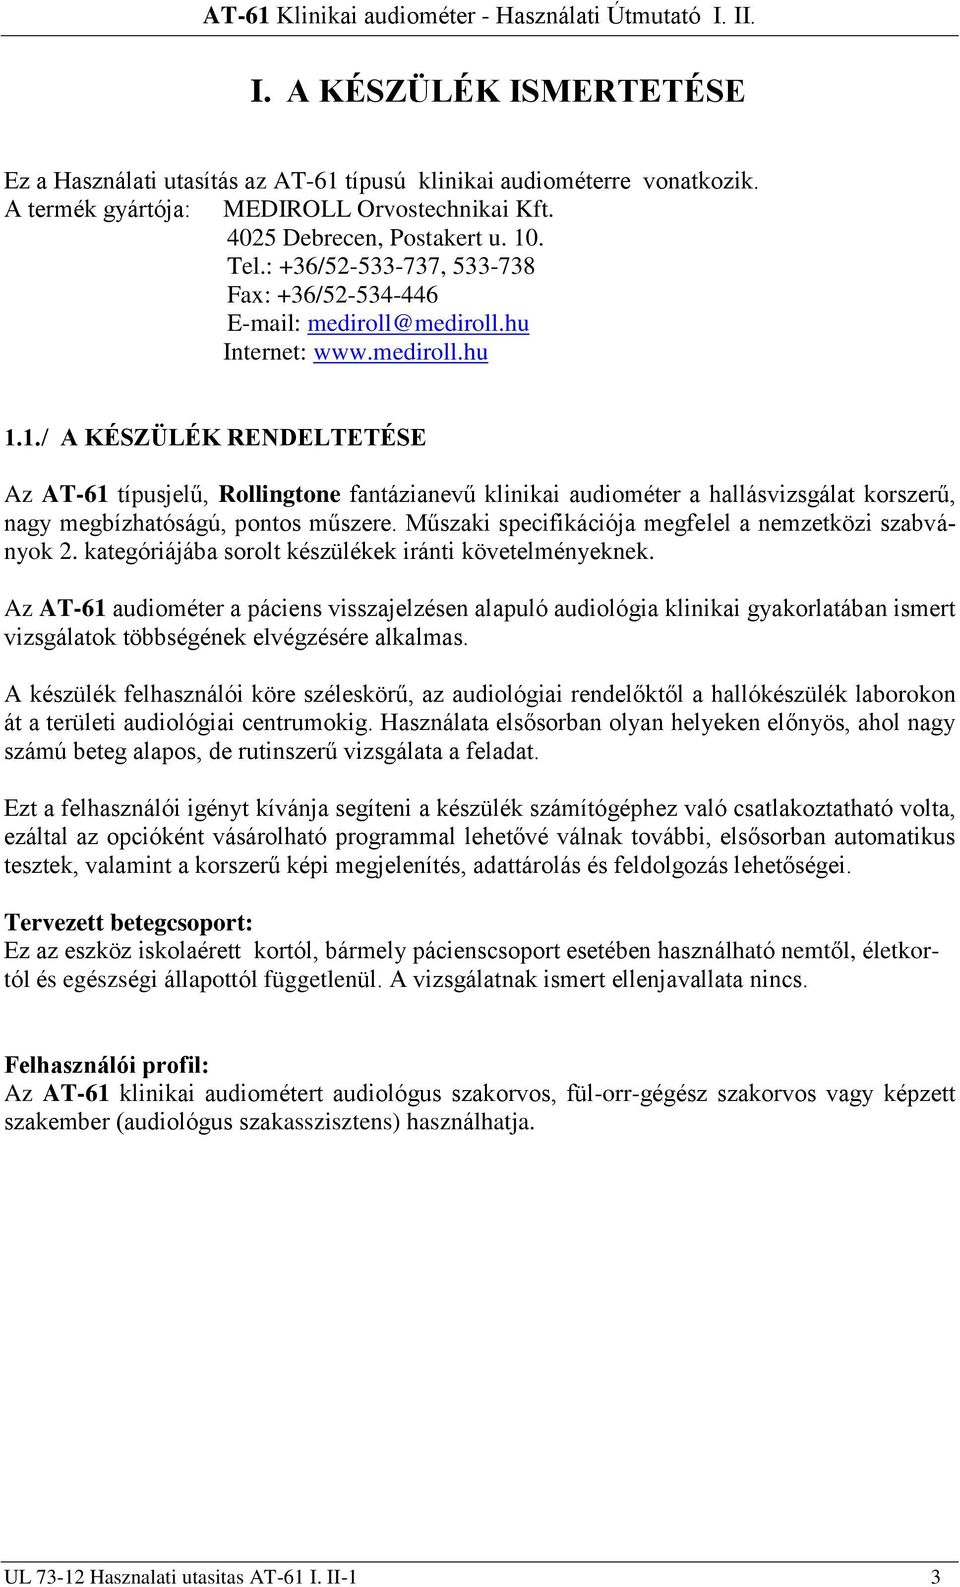 Használati utasítás I.-II. Rollingtone AT-61 Klinikai audiométer - PDF  Ingyenes letöltés